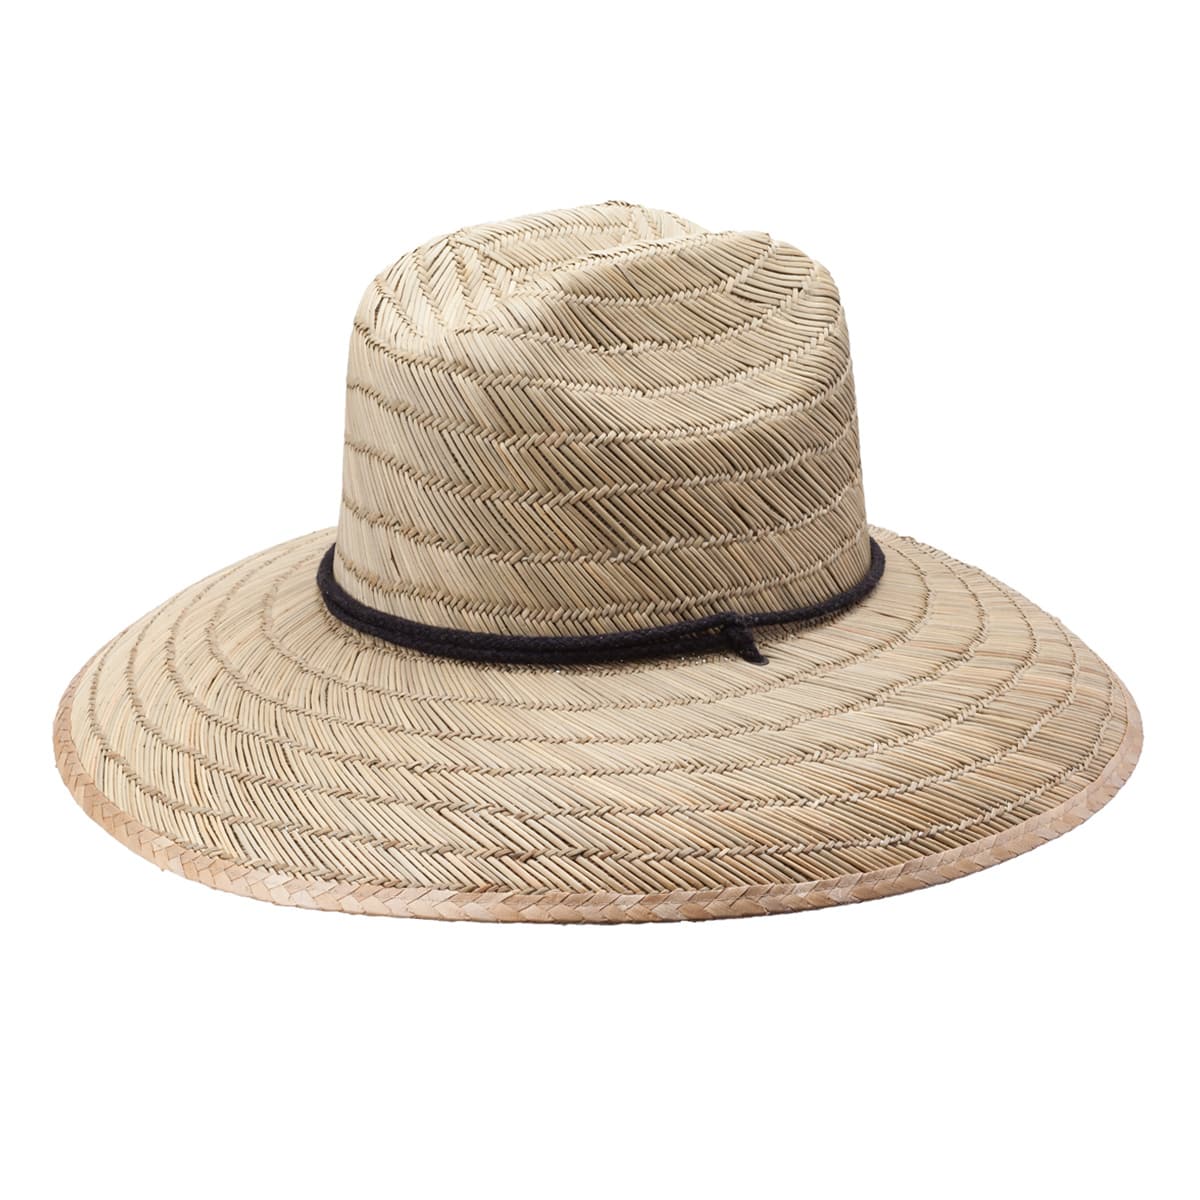 Peter Grimm LTD Men's Pina Lifeguard Hat